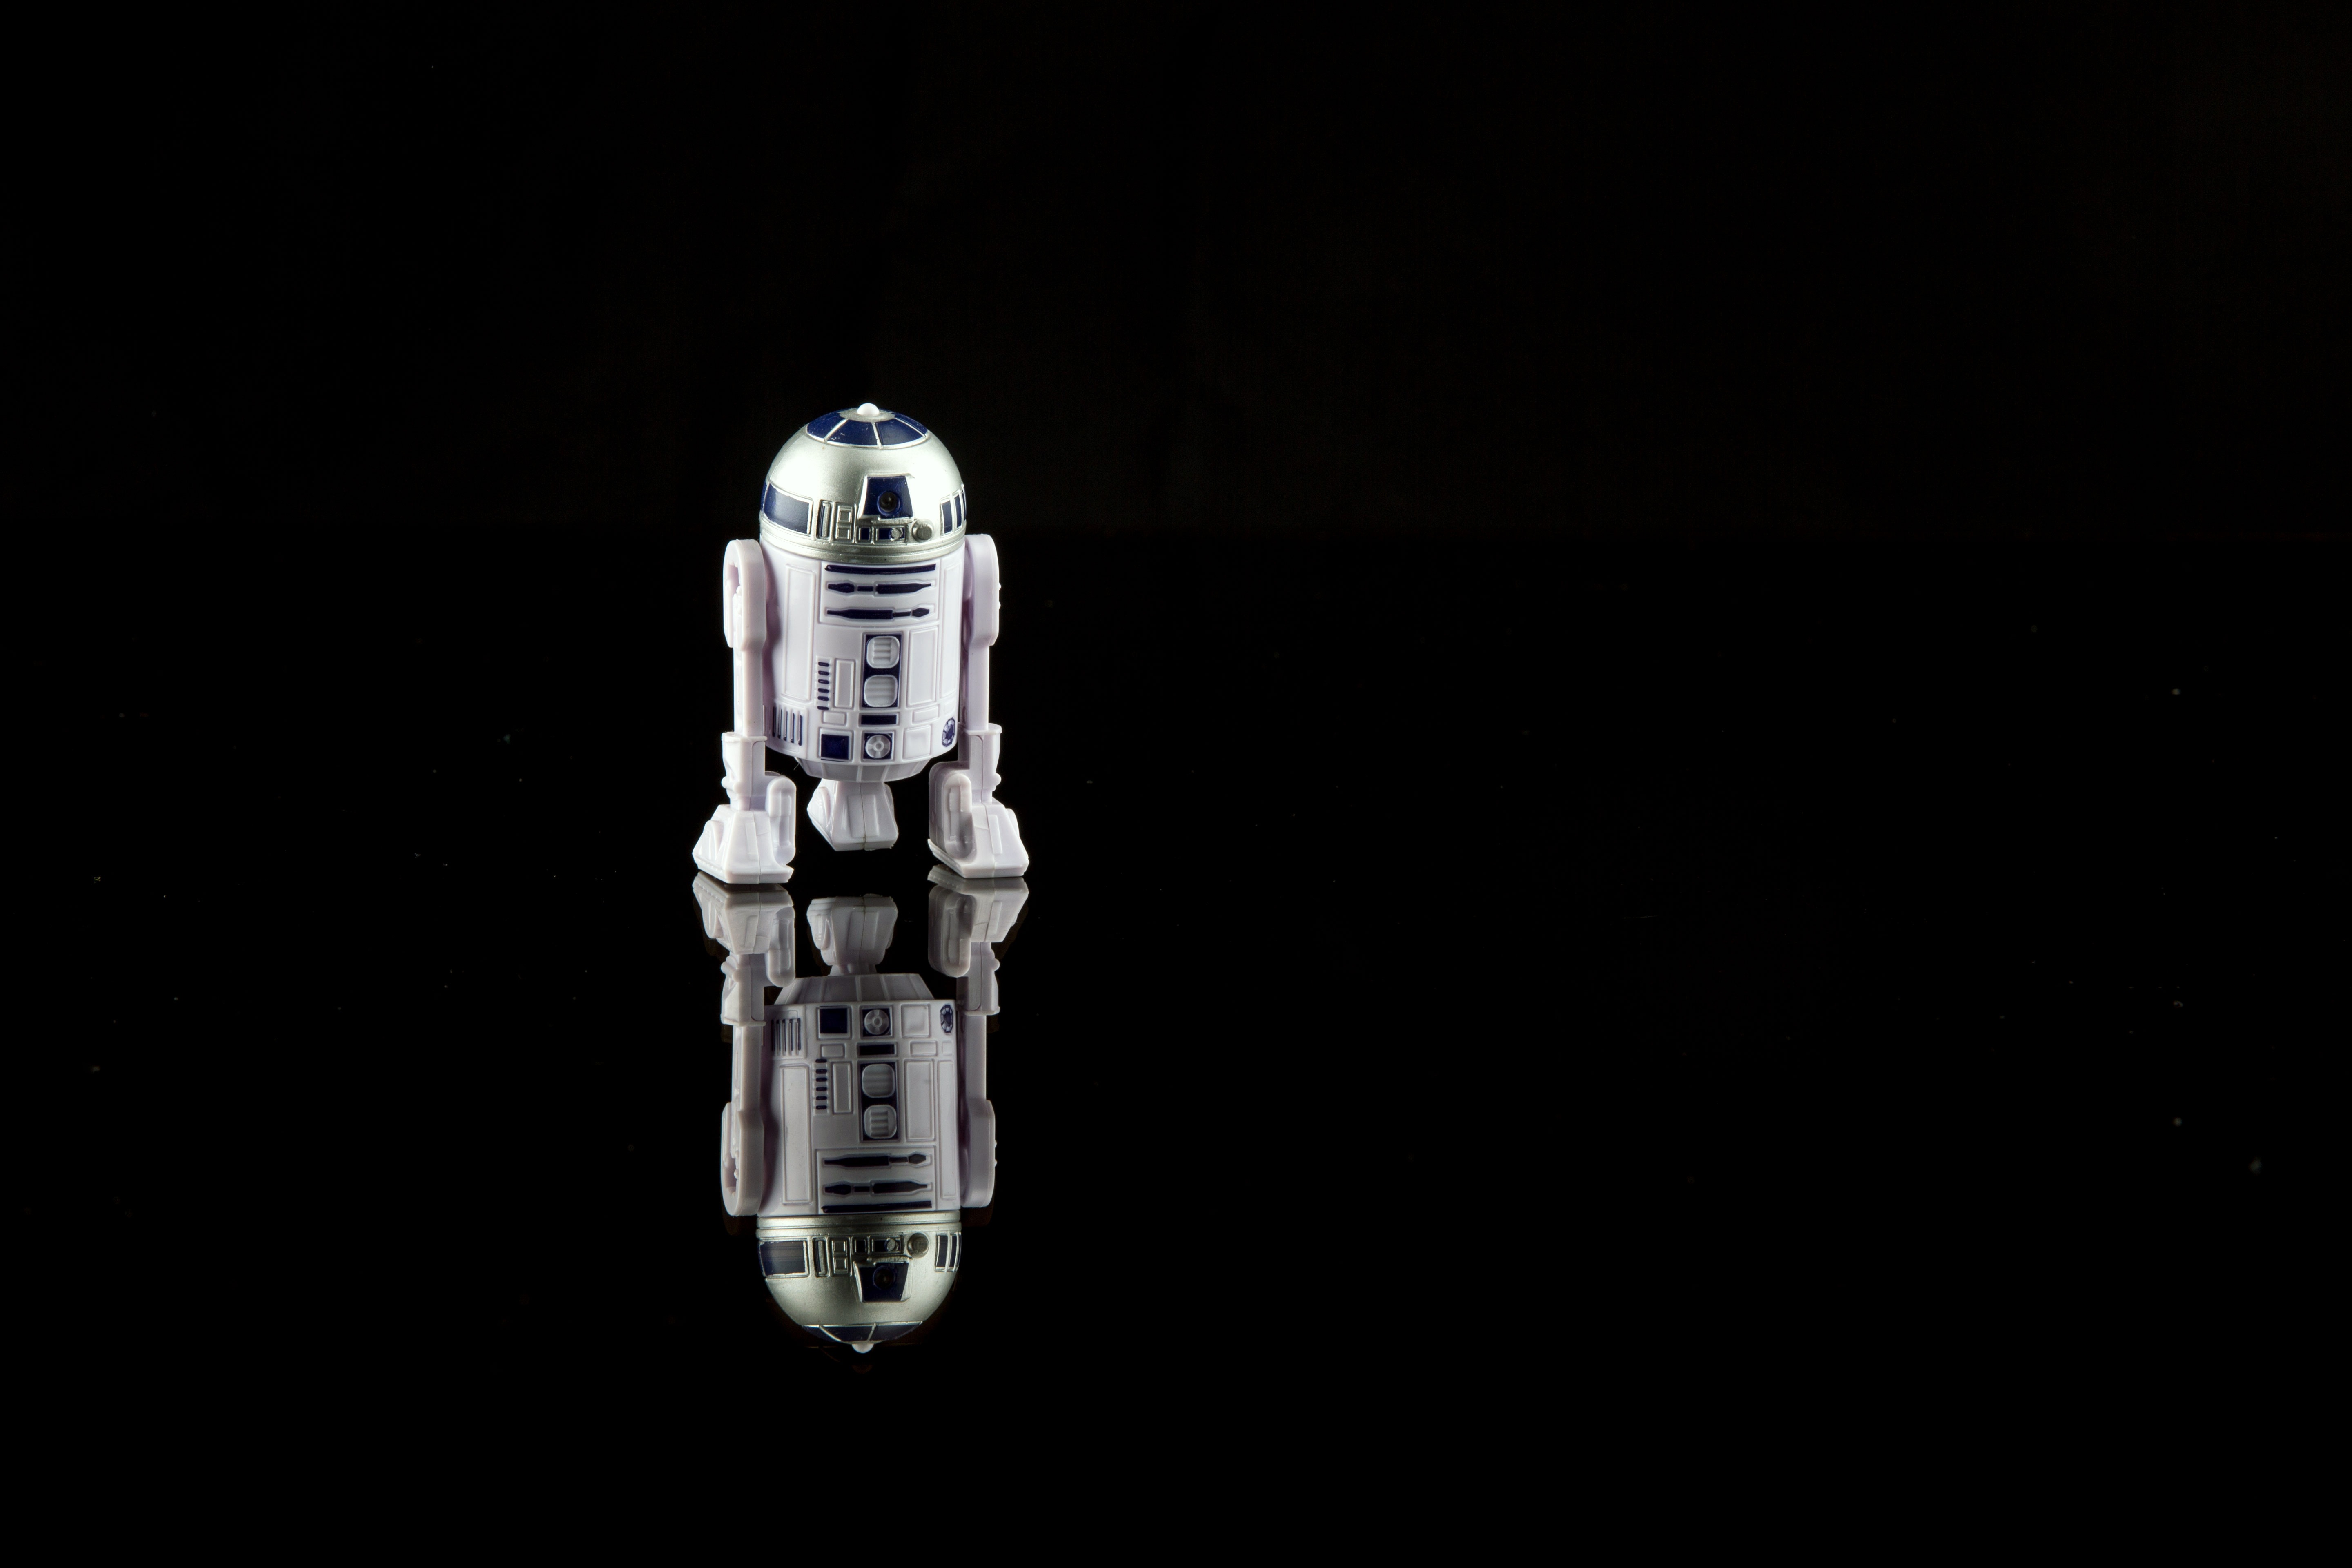 Droid Minimalist R2 D2 Reflection Star Wars Toy 5760x3840